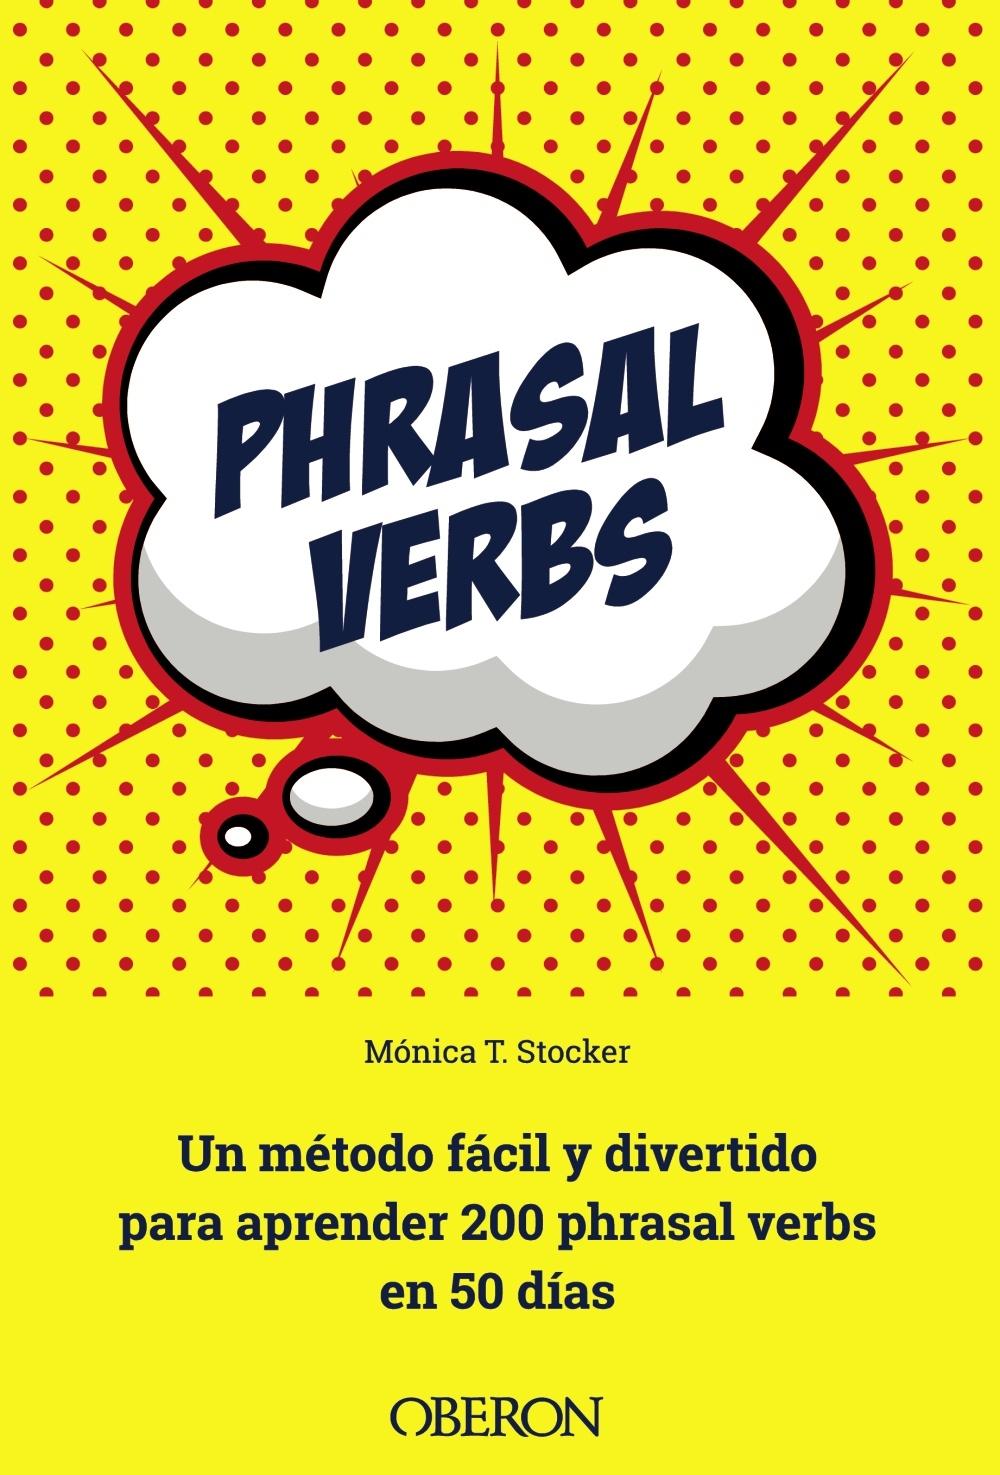 PHRASAL VERBS "Un método fácil y divertido para aprender 200 phrasal verbs en 50 días"